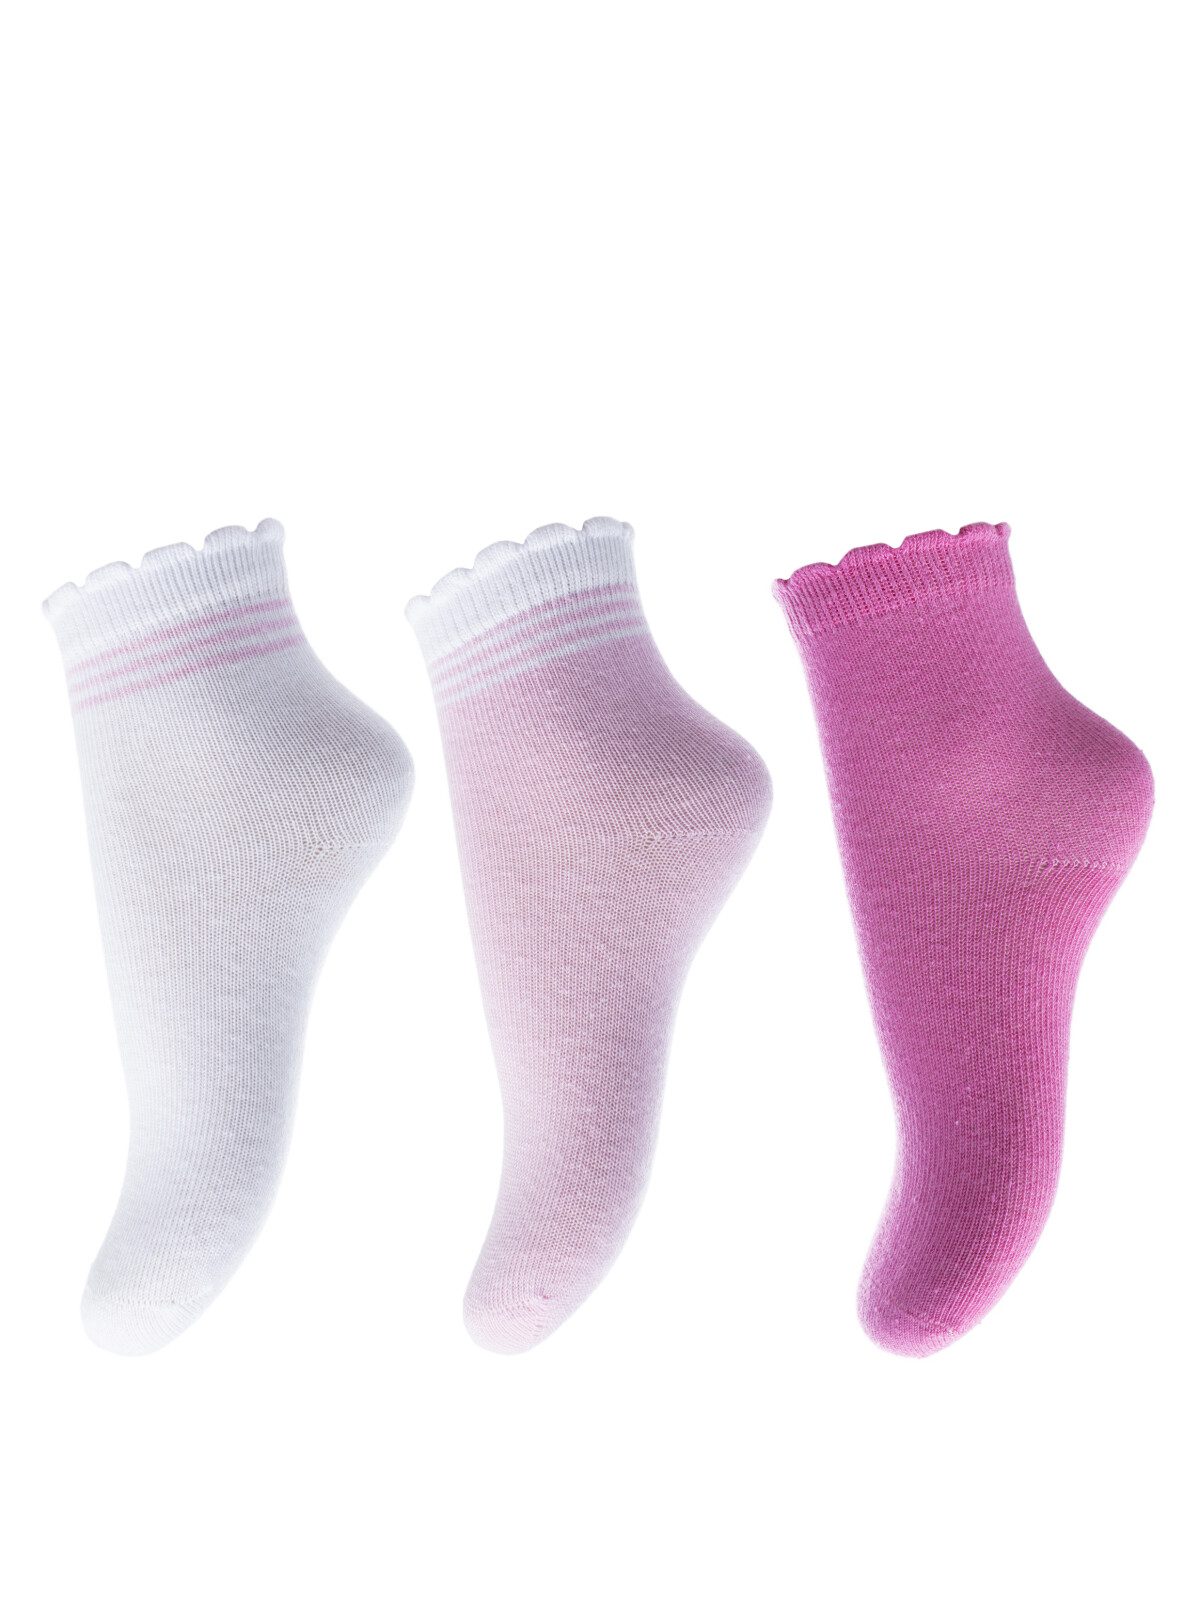 Носки для девочки. Комплект 3 пары